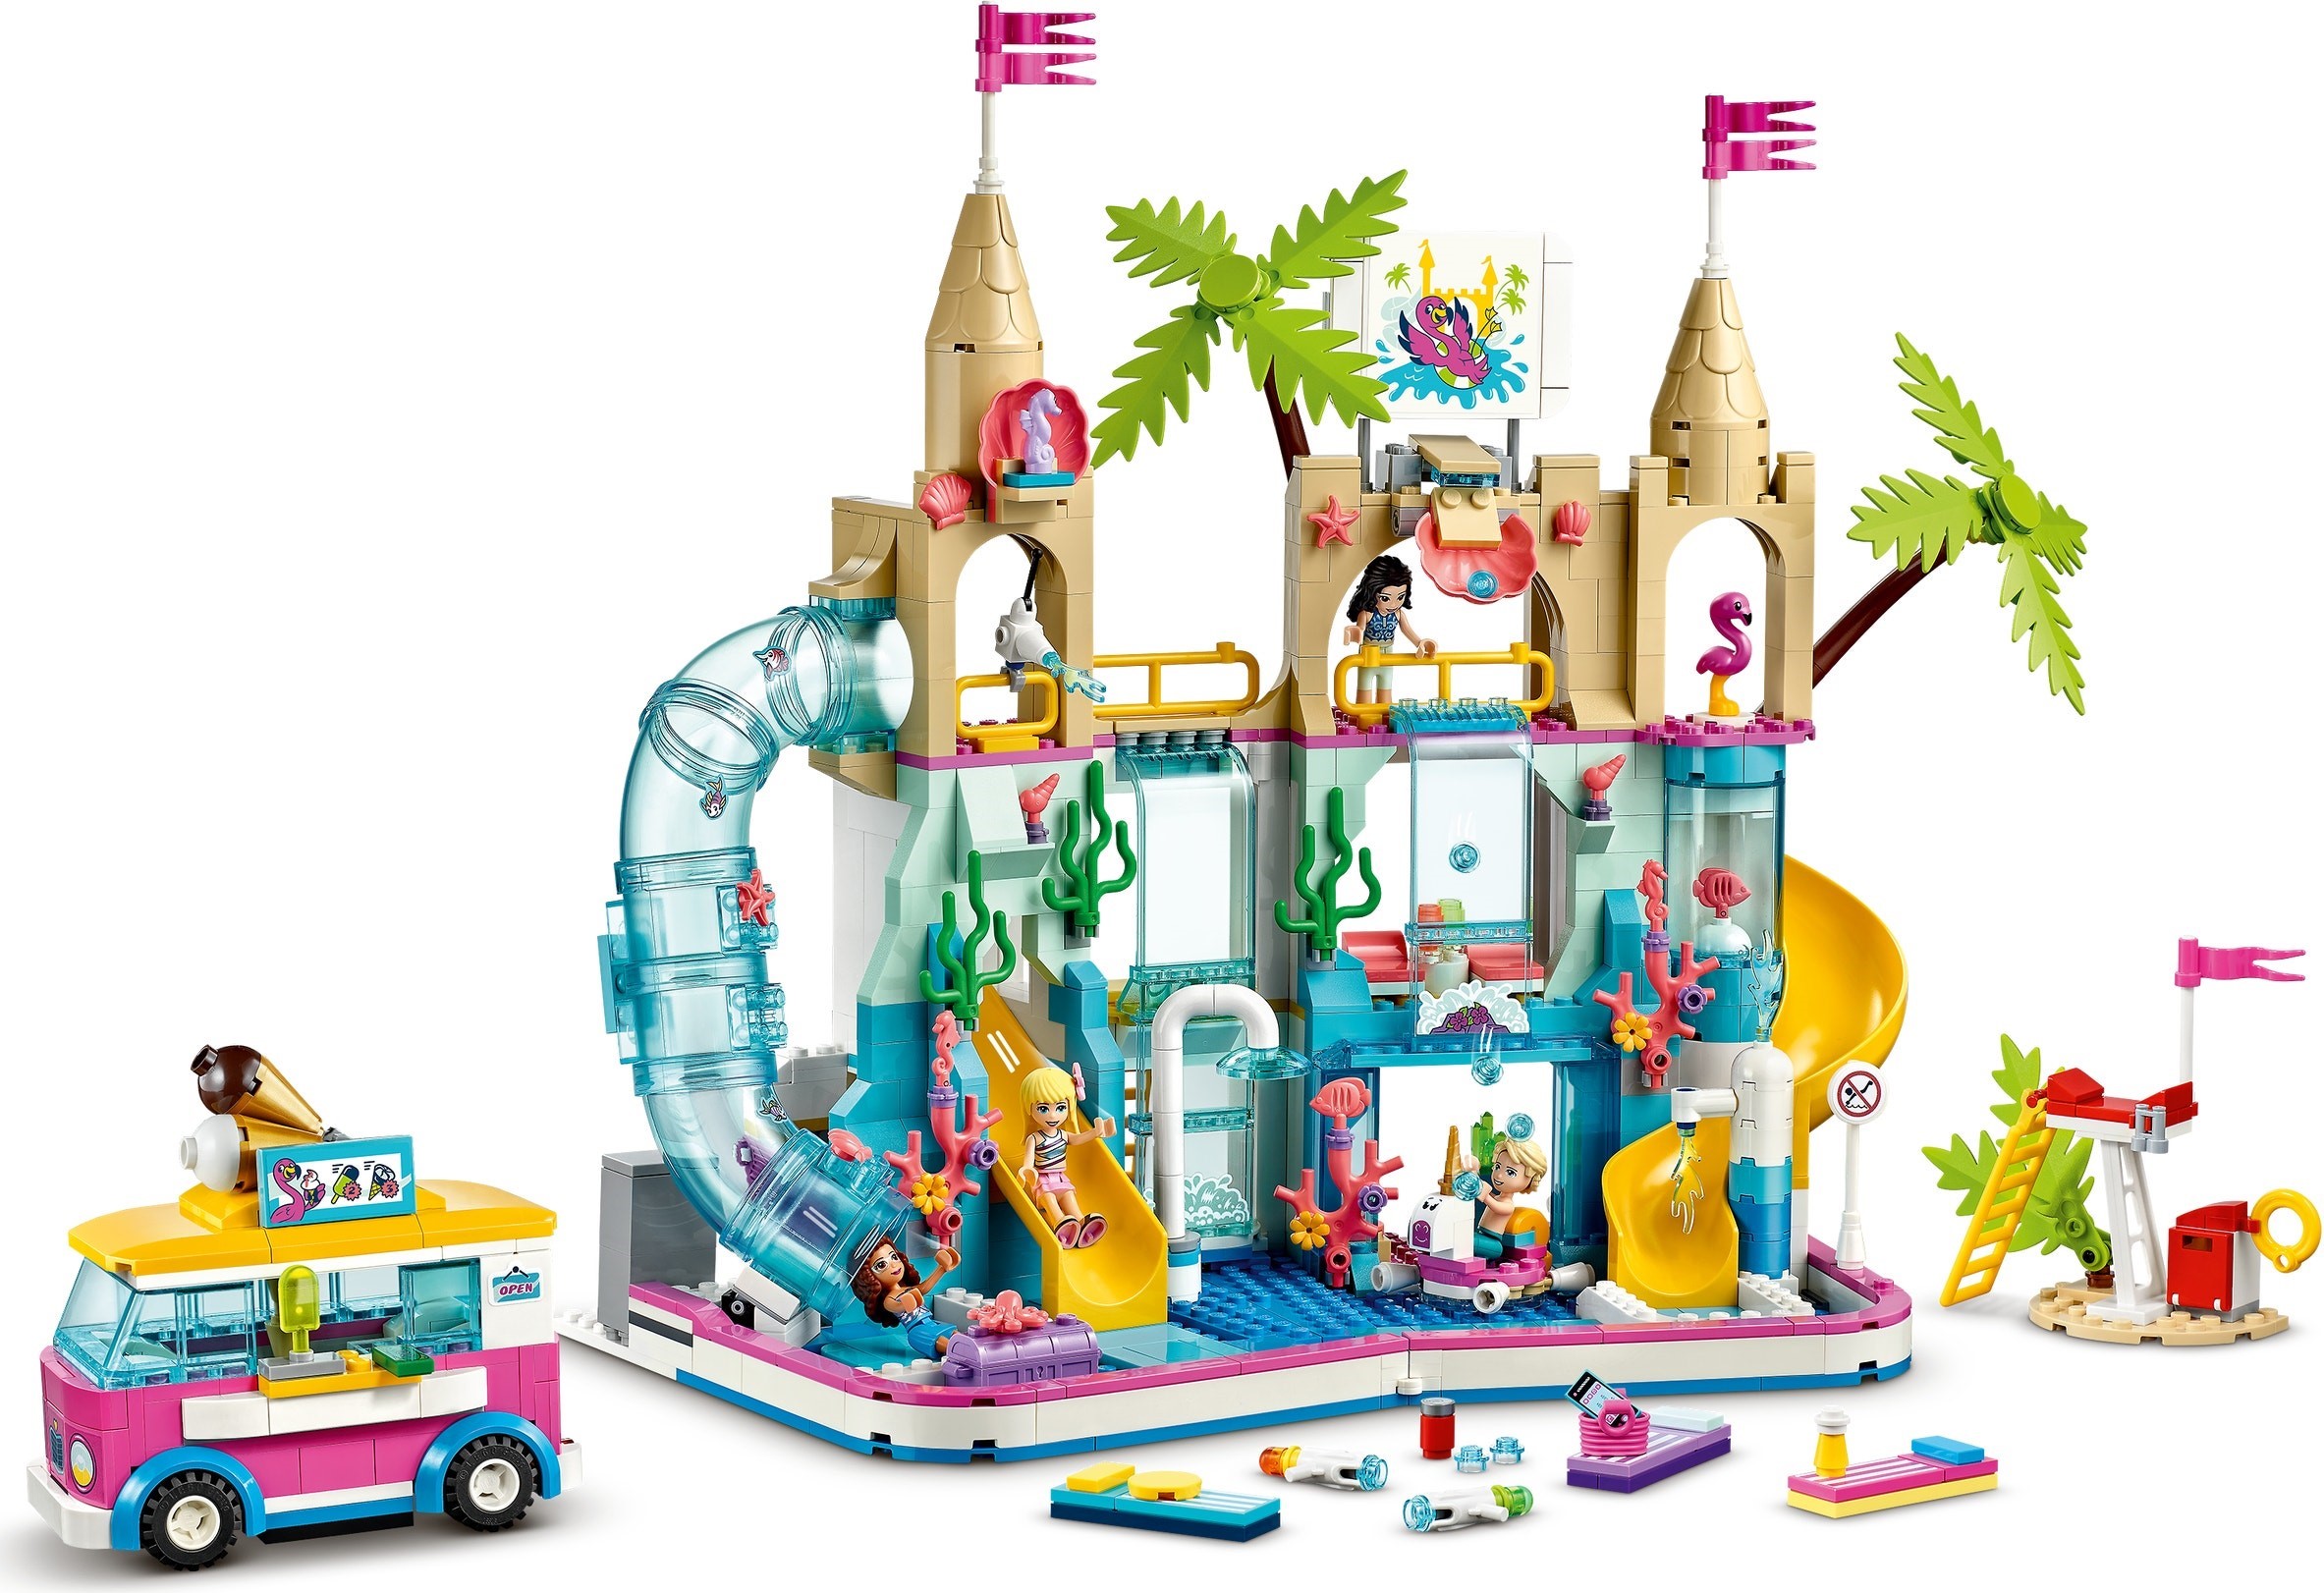 41430 LEGO® Friends Summer Fun Water Park / Wasserpark von Heartlake